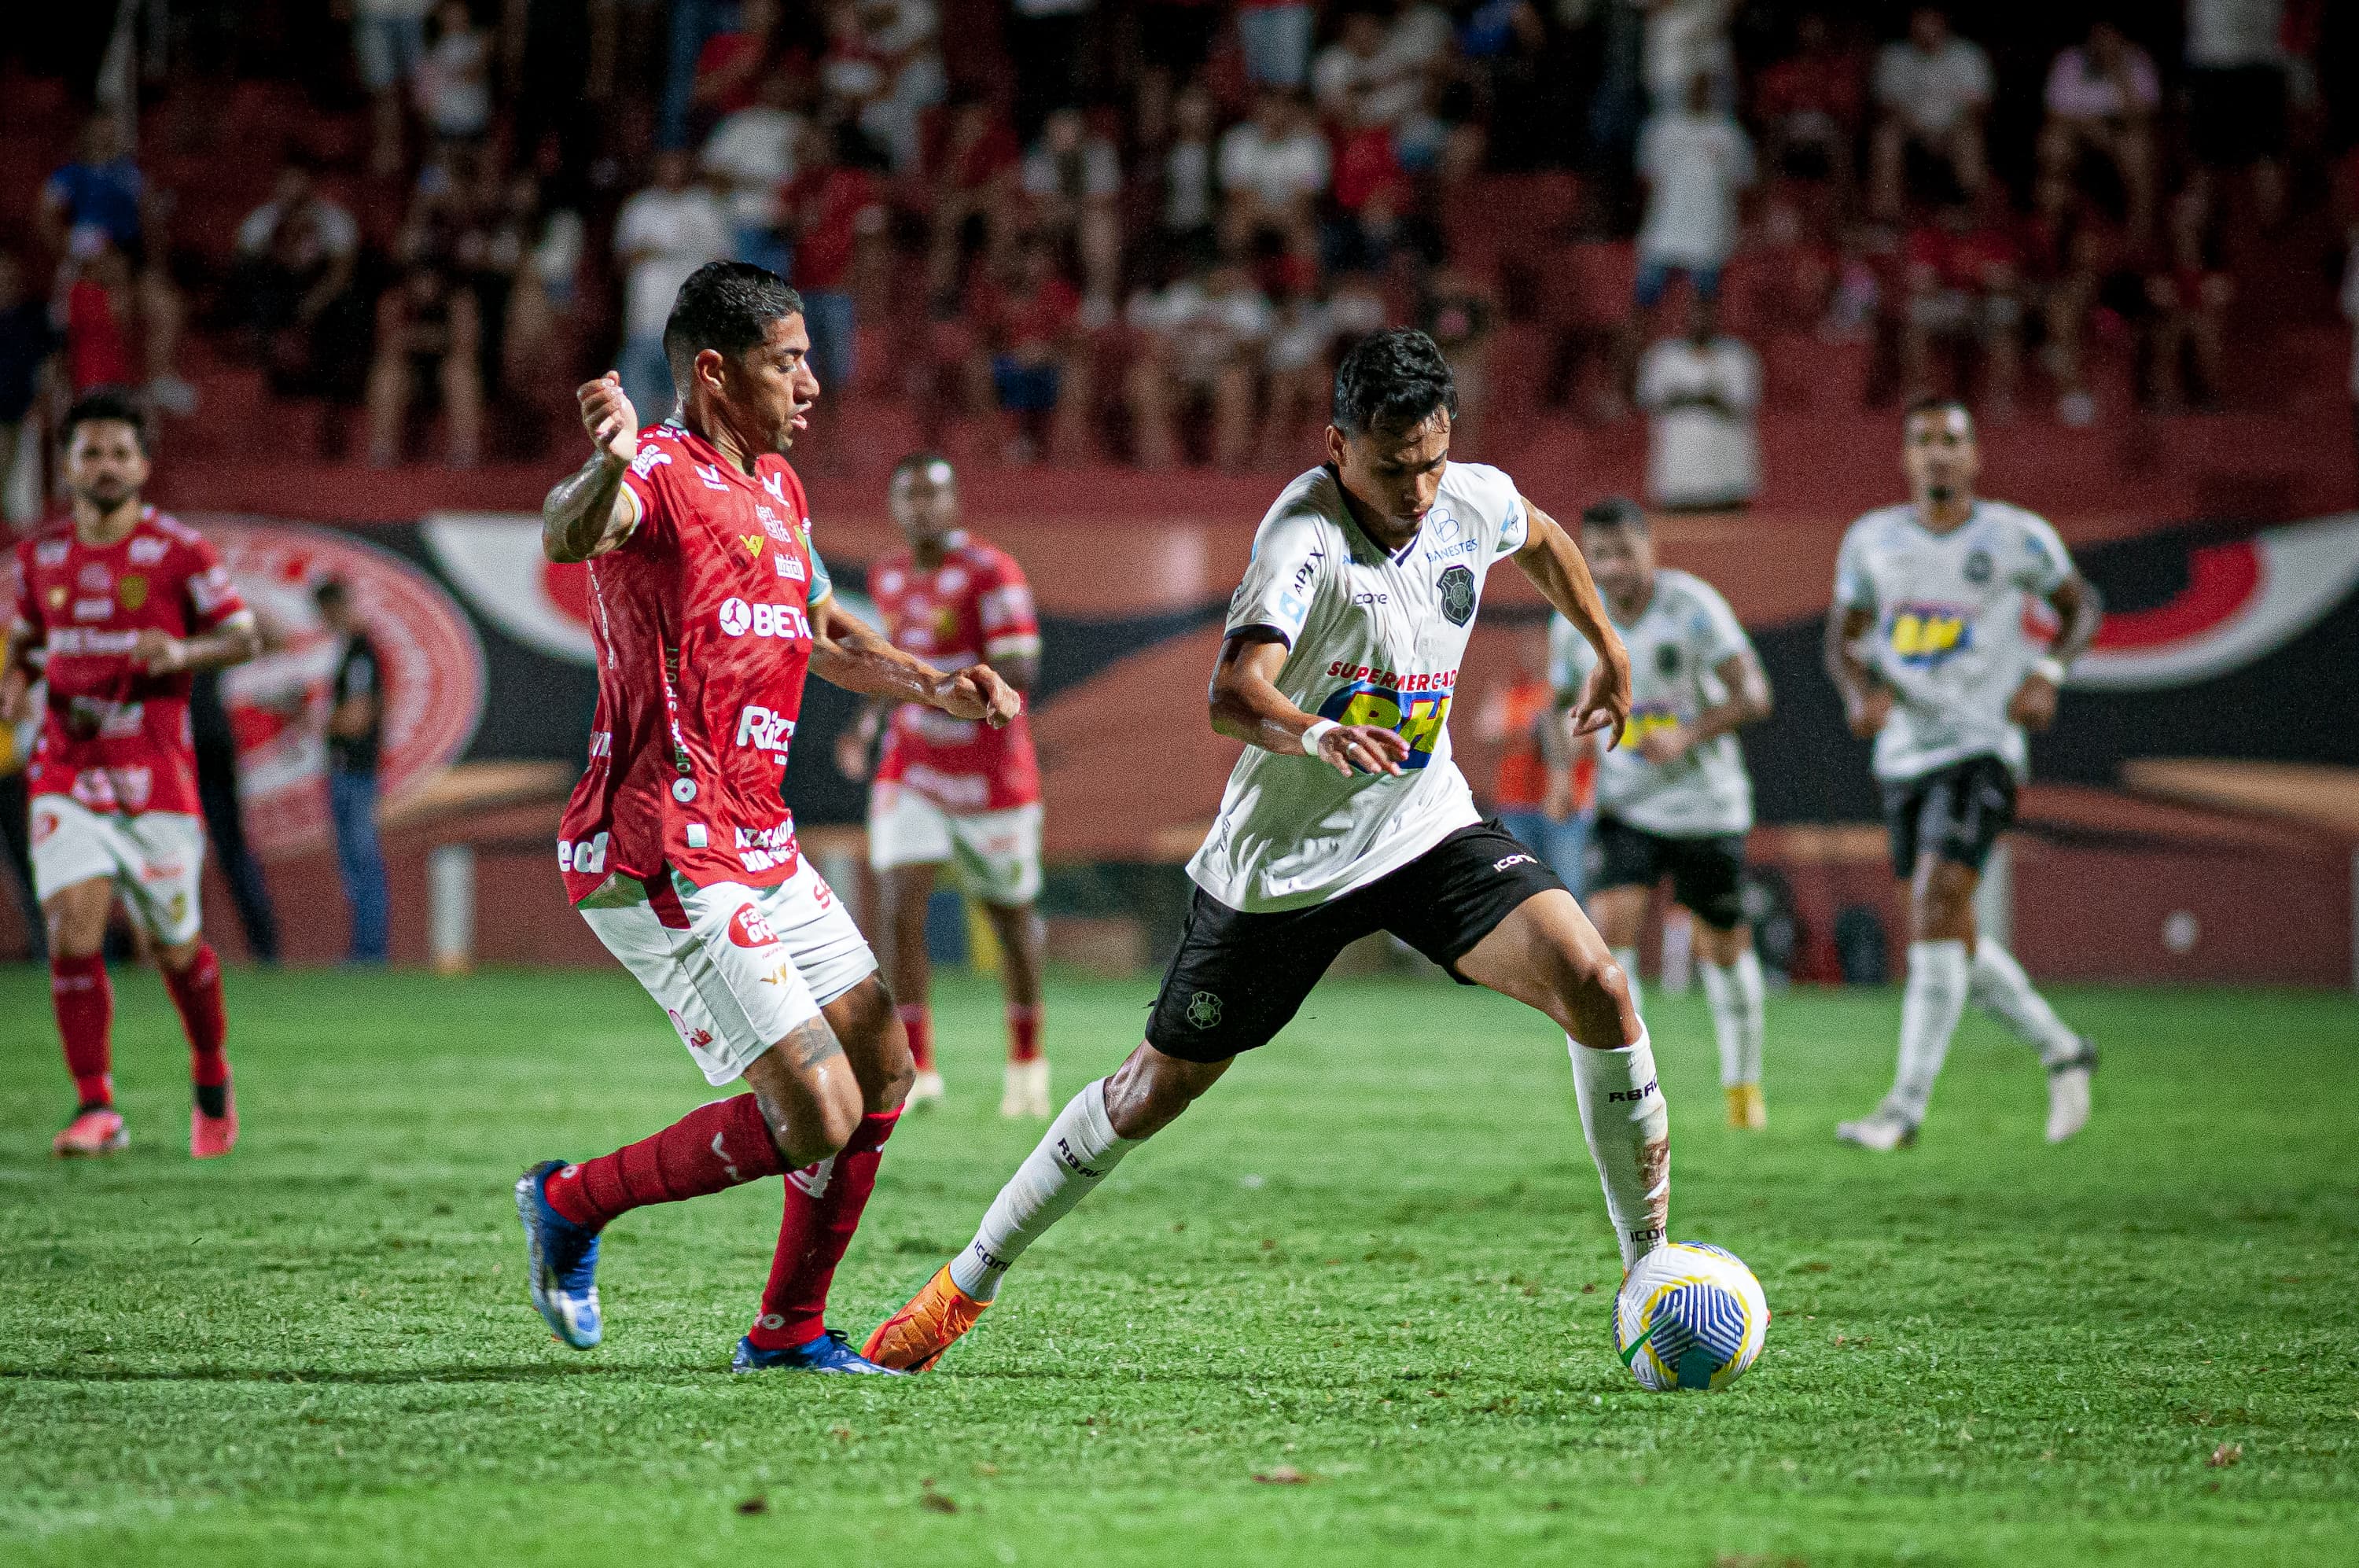 Jogando fora de casa, o Capa-Preta não resistiu à pressão da equipe goiana e foi derrotado por 1 a 0, com gol de Luciano Naninho